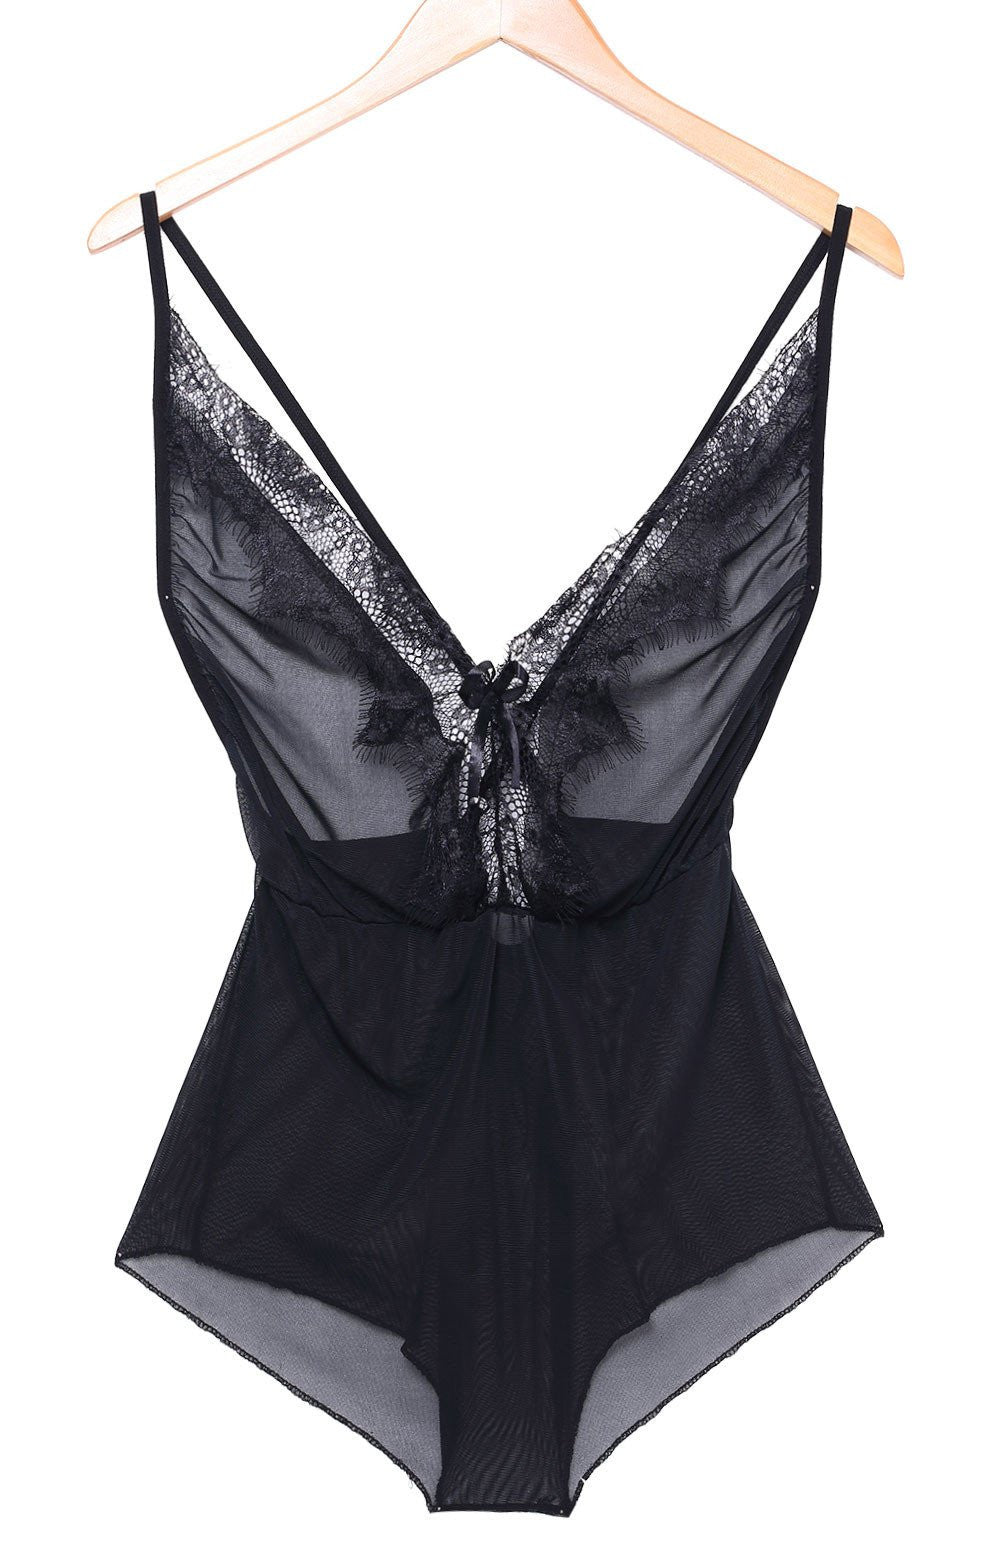 Lingerie Women Black Lace Stain Intimate Sleepwear Deep V-Neck Back Crossfit Babydoll Dress Nightwear Plus Size